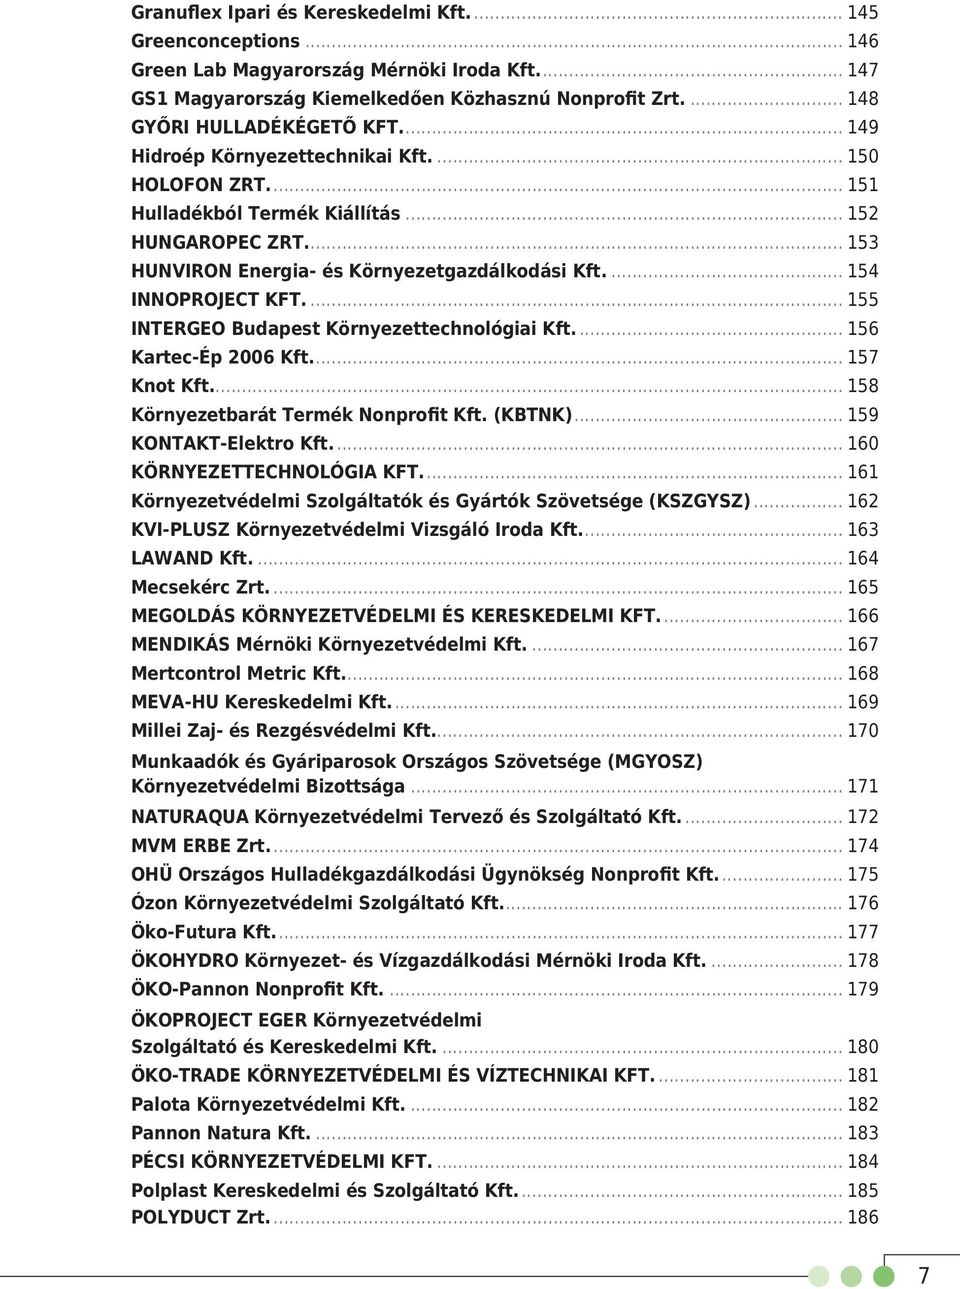 ... 155 INTERGEO Budapest Környezettechnológiai Kft.... 156 Kartec-Ép 2006 Kft.... 157 Knot Kft... 158 Környezetbarát Termék Nonprofit Kft. (KBTNK)... 159 KONTAKT-Elektro Kft.